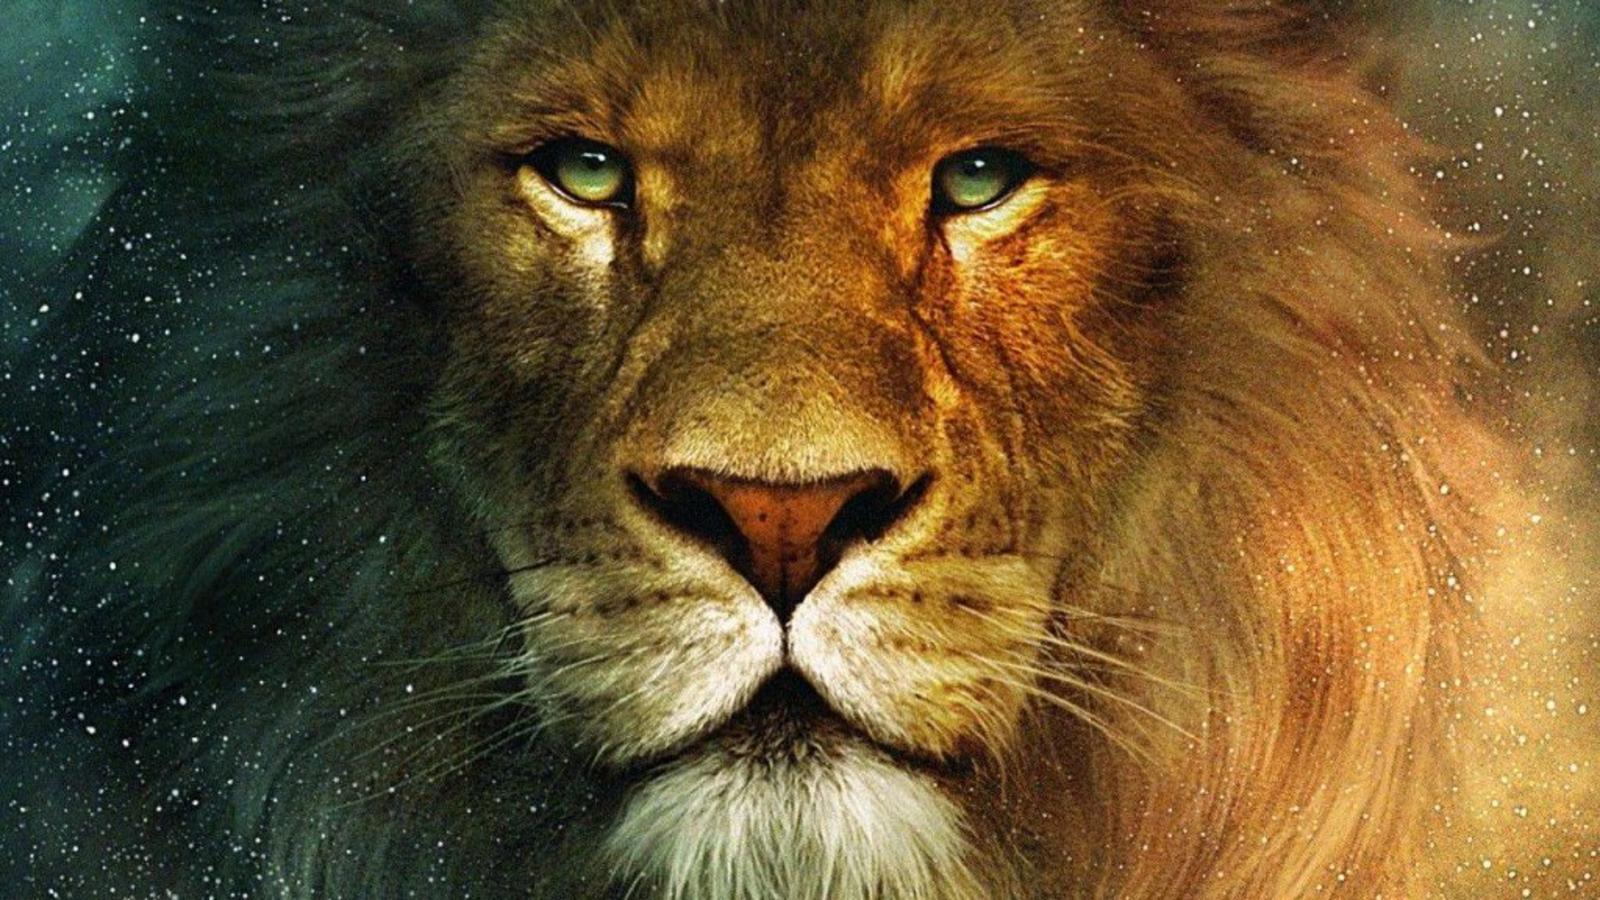 Aslan The Lion From Narnia Cronicas De Narnia Leao Wallpaperuse